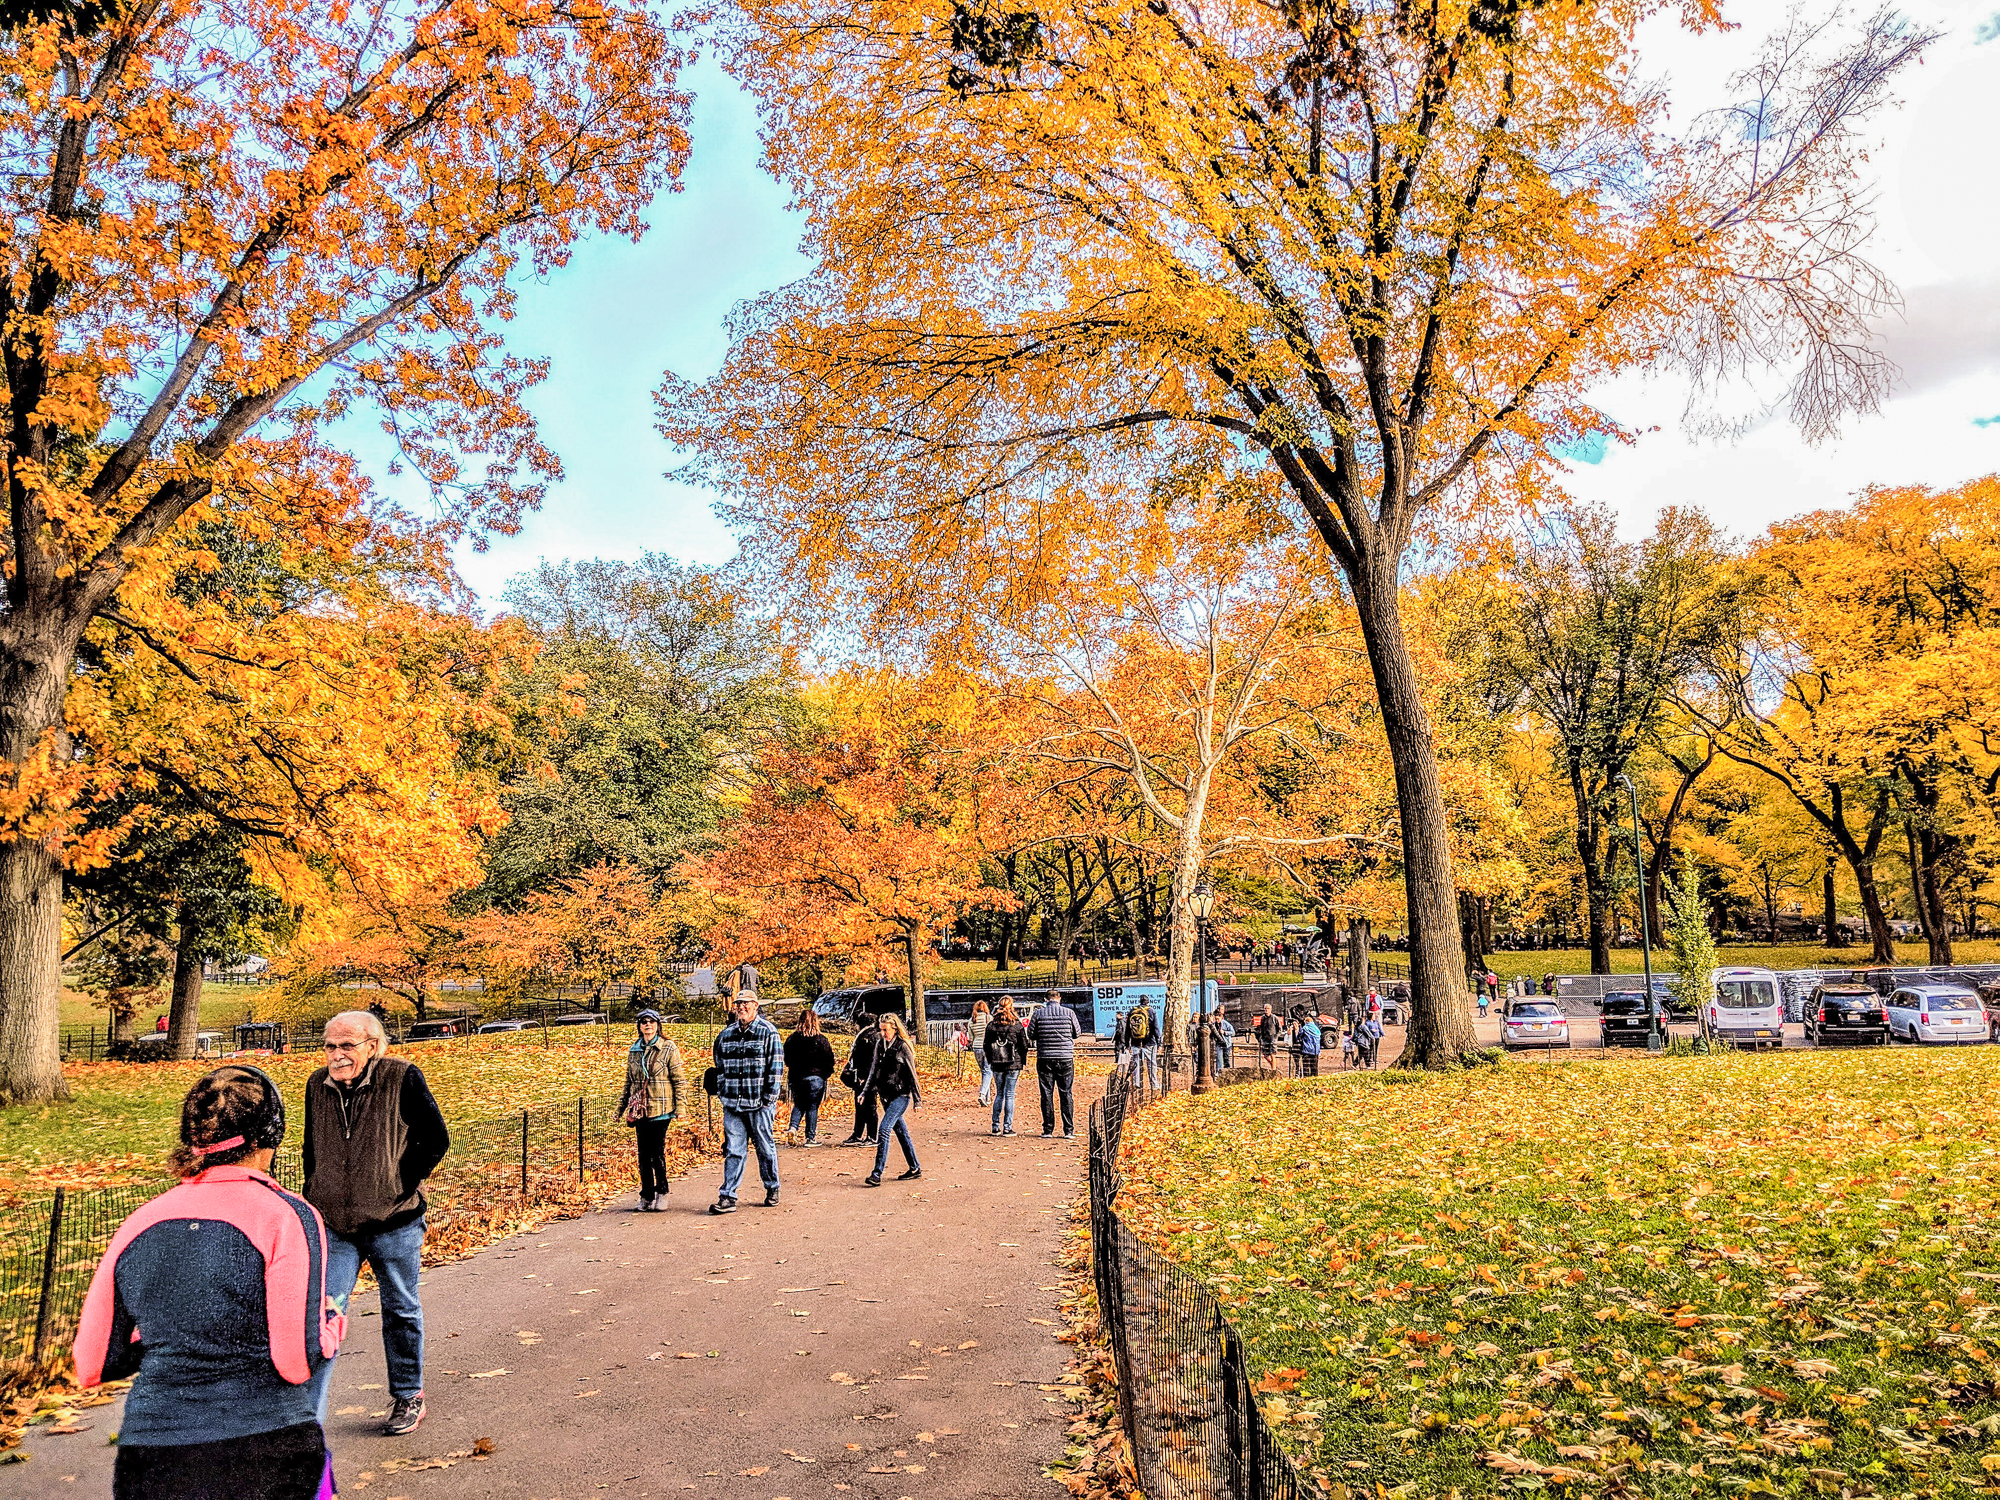 Foto de Nova York no outono, com as árvores do Central Park em tons de amarelo e laranja